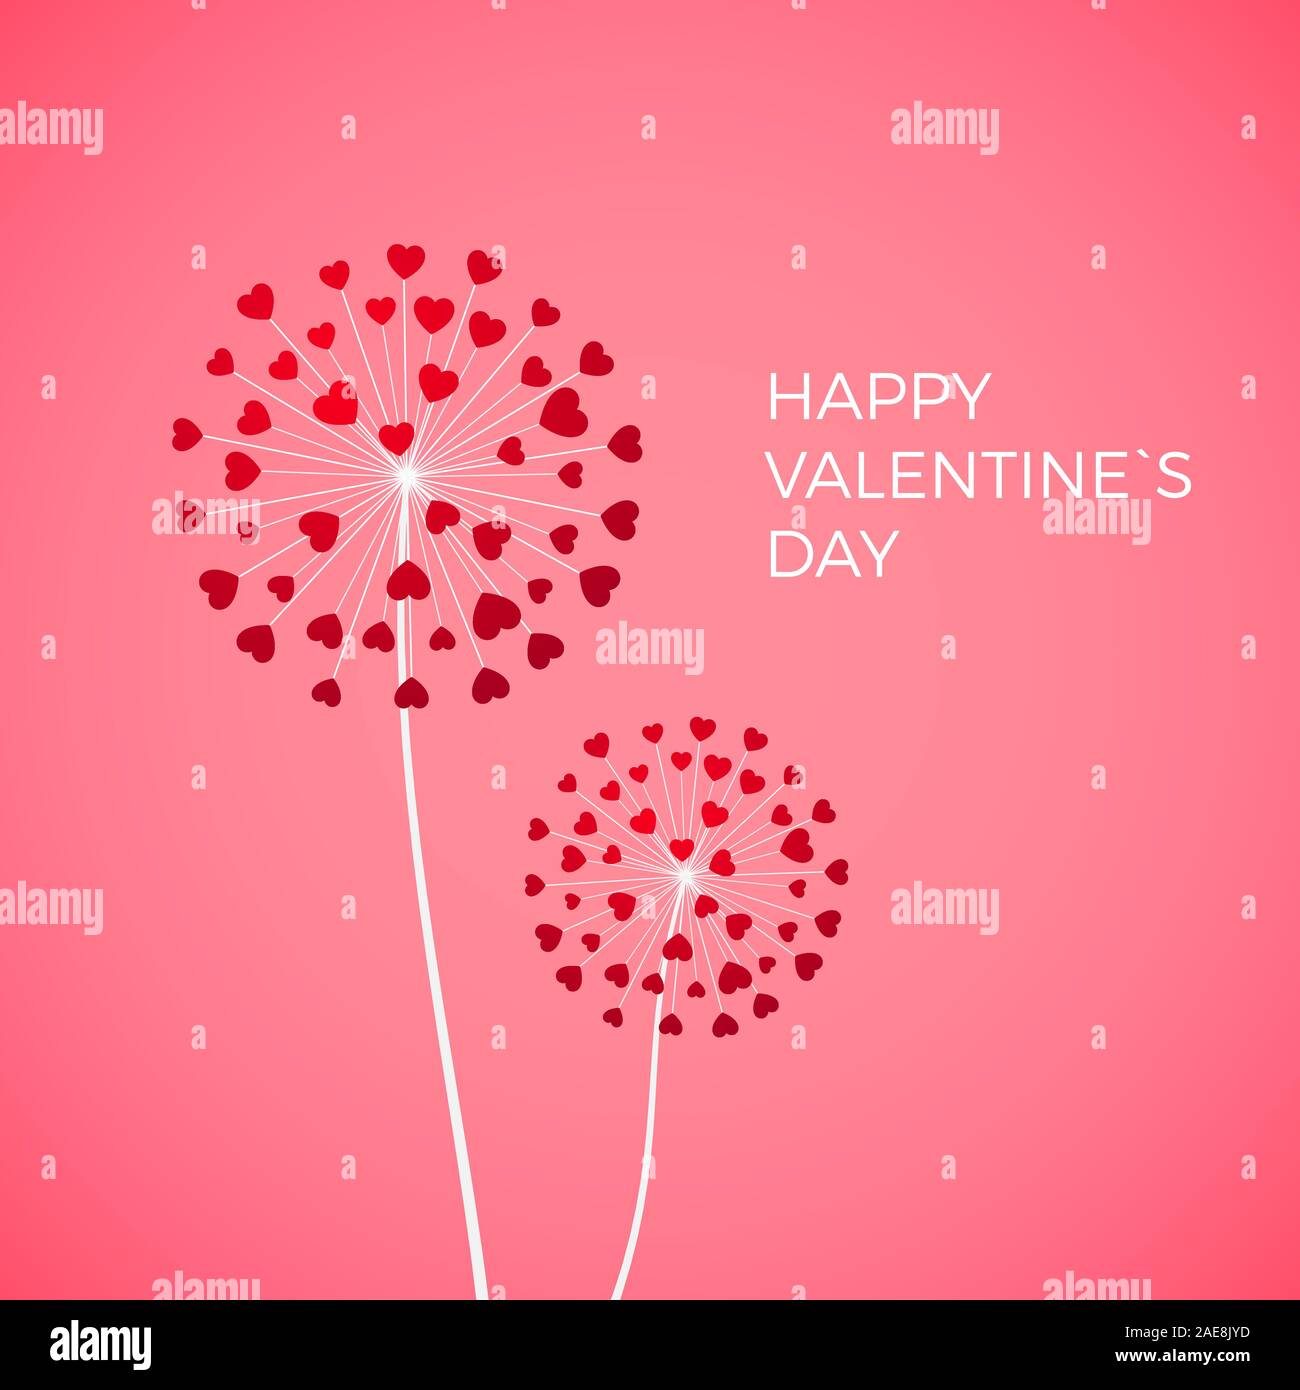 Paar Löwenzahn mit roten Herzen. Happy Valentinstag Grußkarten auf rosa Hintergrund. Weiß mit roten Herzen blowball Symbol der Liebe. Vektor Stock Vektor